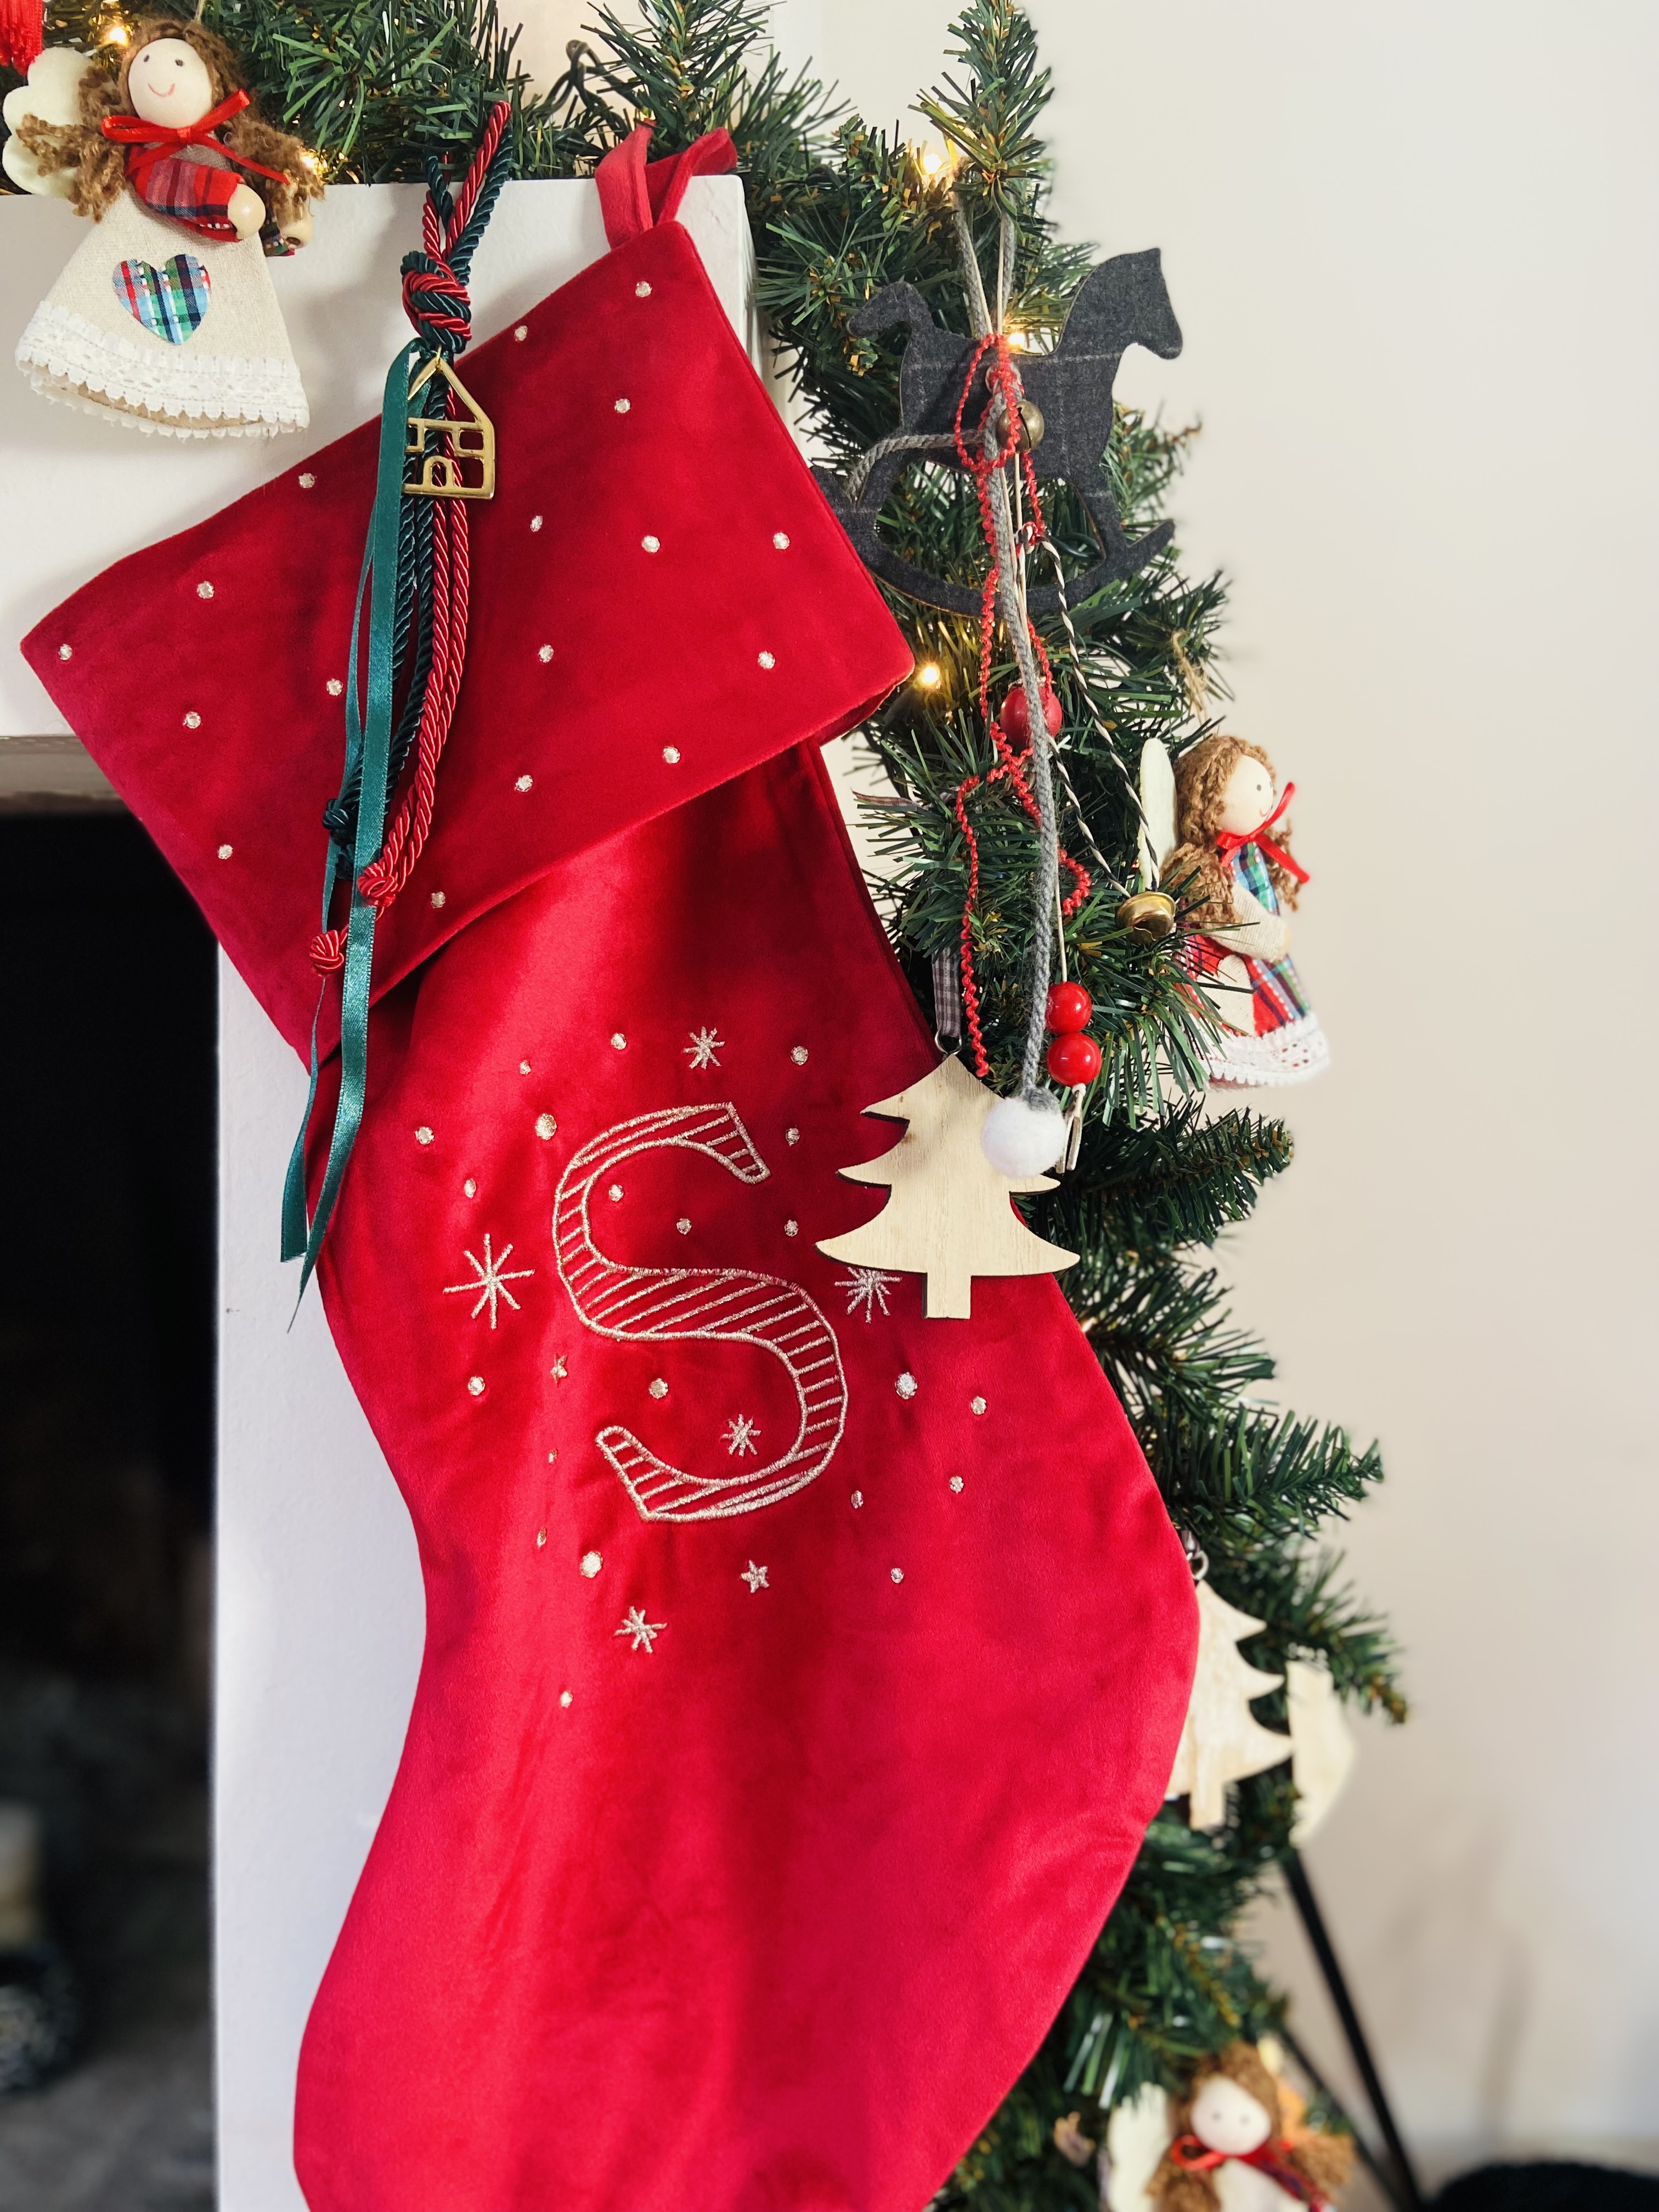 χριστούγεννα κάλτσα τζάκι S μονόγραμμα γιορτές ελλάδα βούλα